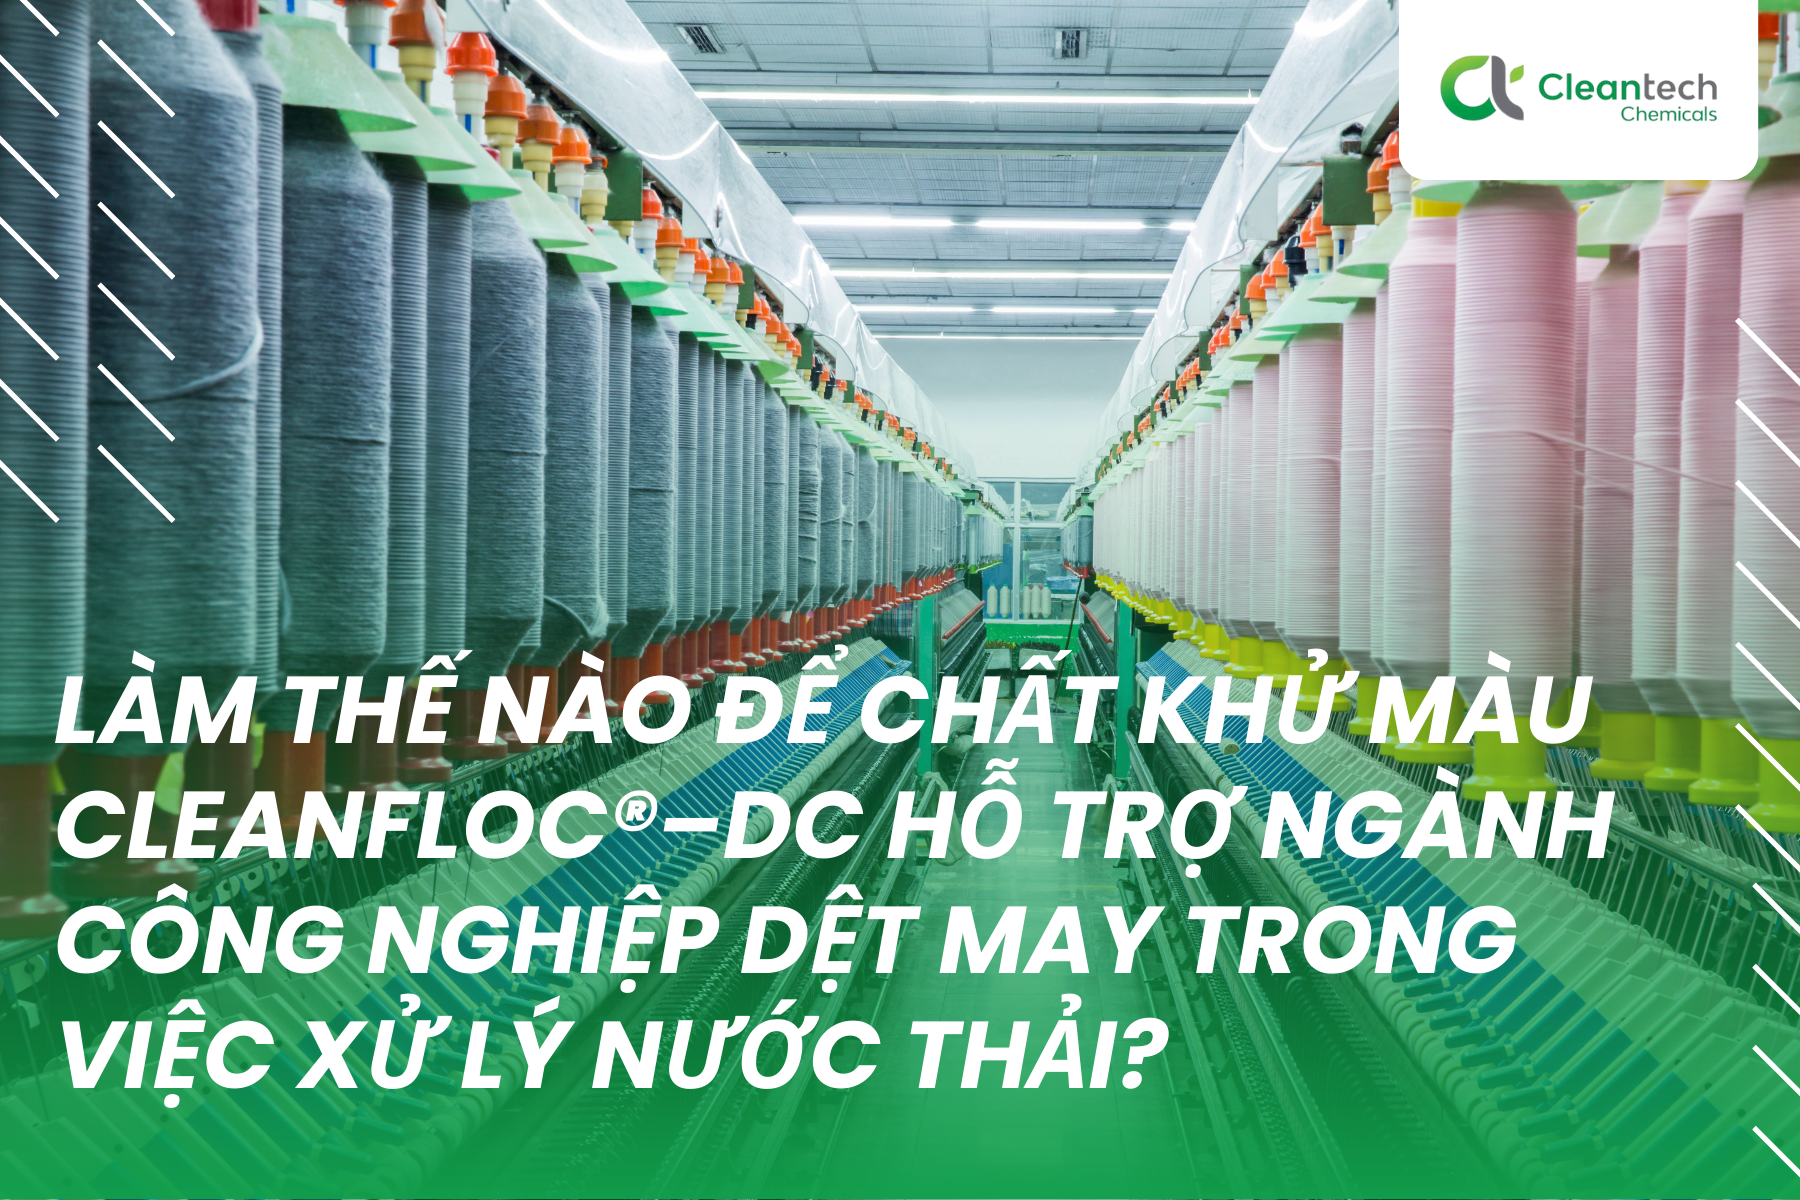 Làm thế nào để chất khử màu CleanFloc®–DC hỗ trợ ngành công nghiệp dệt may trong việc xử lý nước thải?